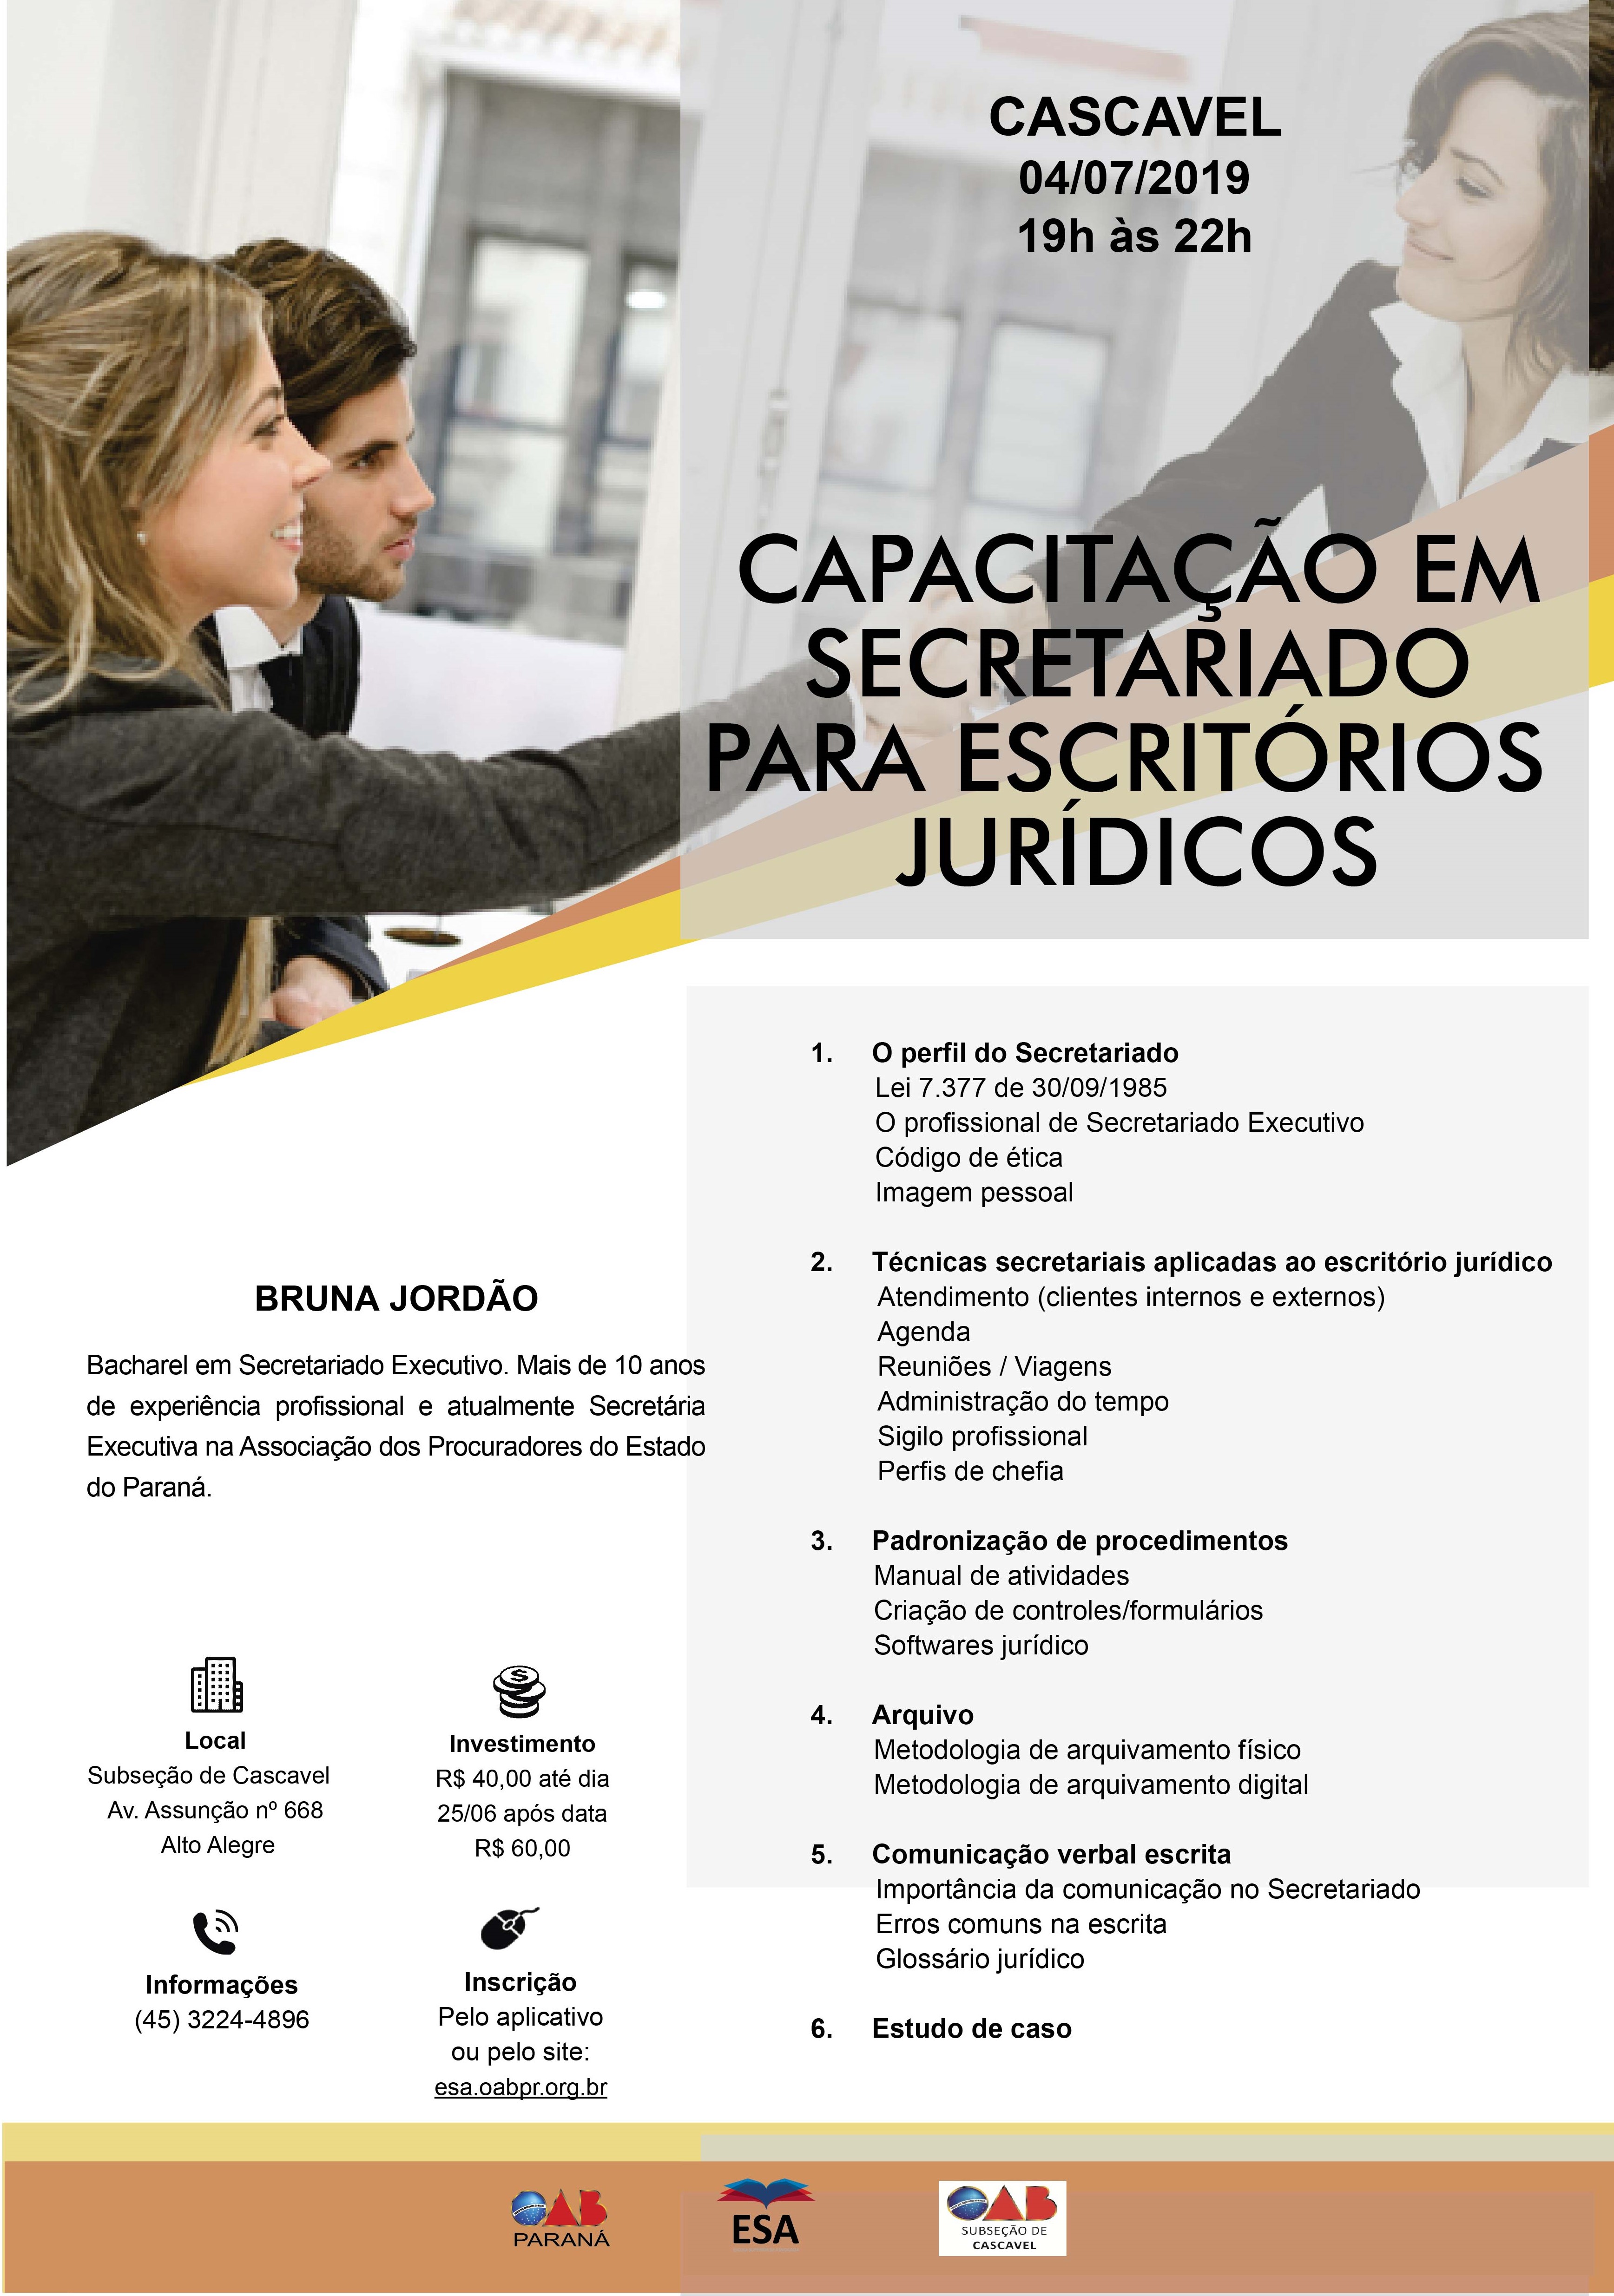 Capacitação em secretariado para escritórios jurídicos